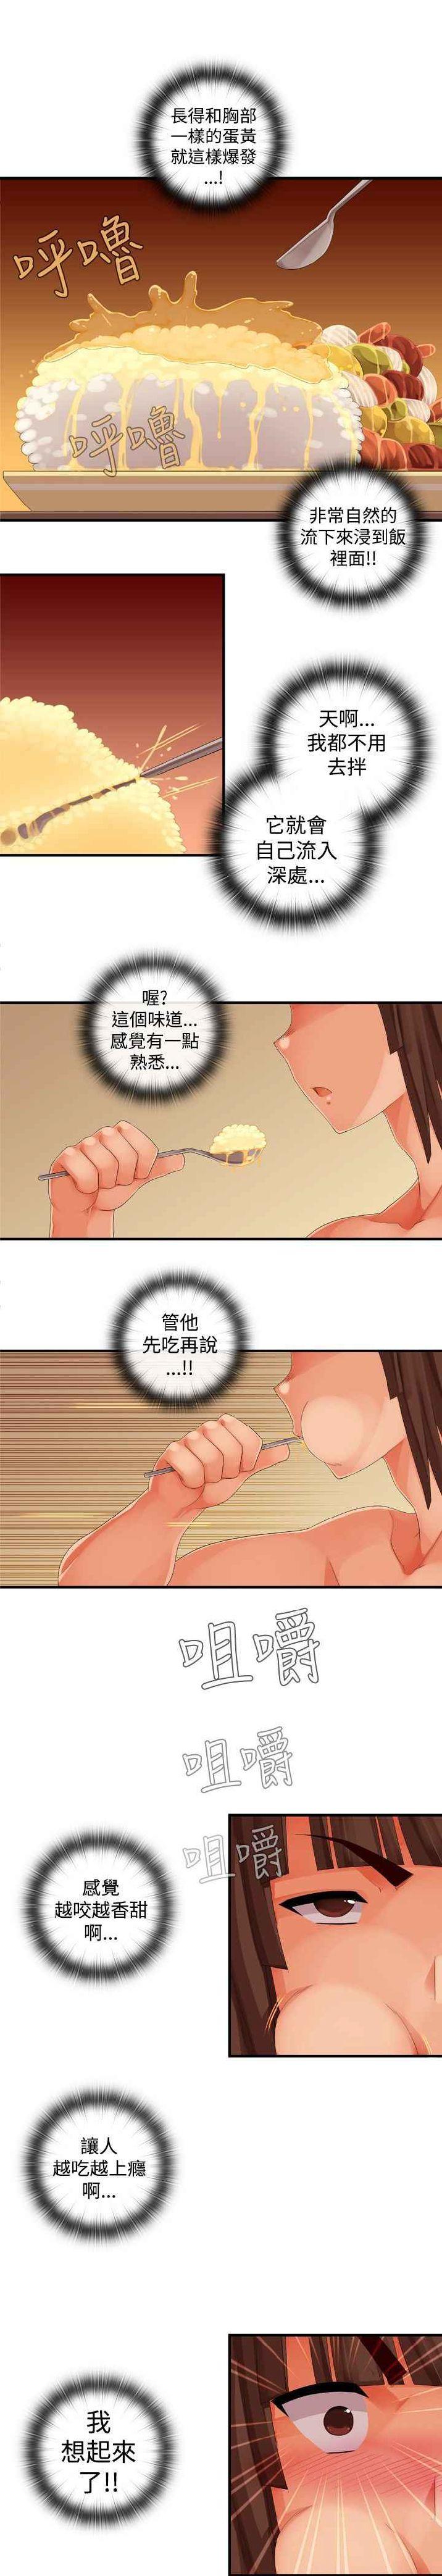 姐妹丼饭 Sister rice Chinese Rsiky 411